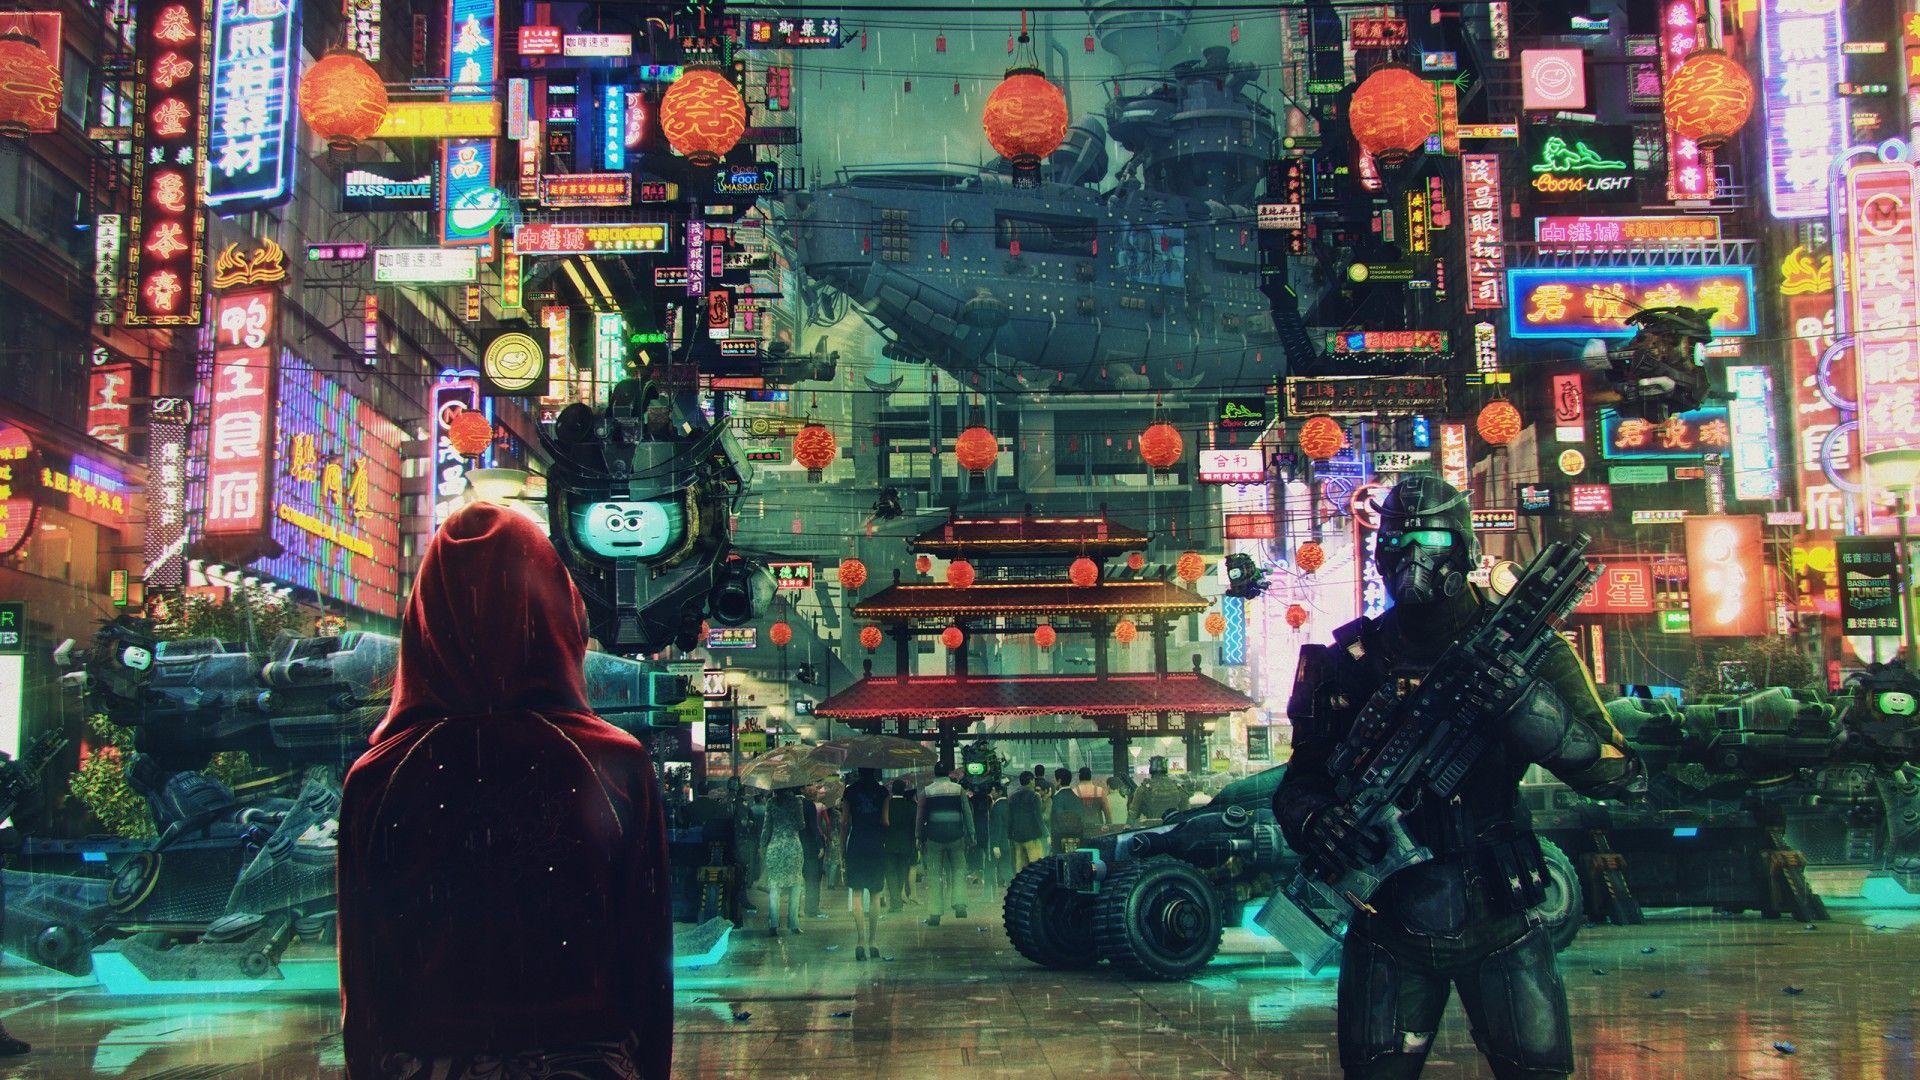 Cyberpunk City Wallpaper. Wallpaper Studio 10. Tens of thousands